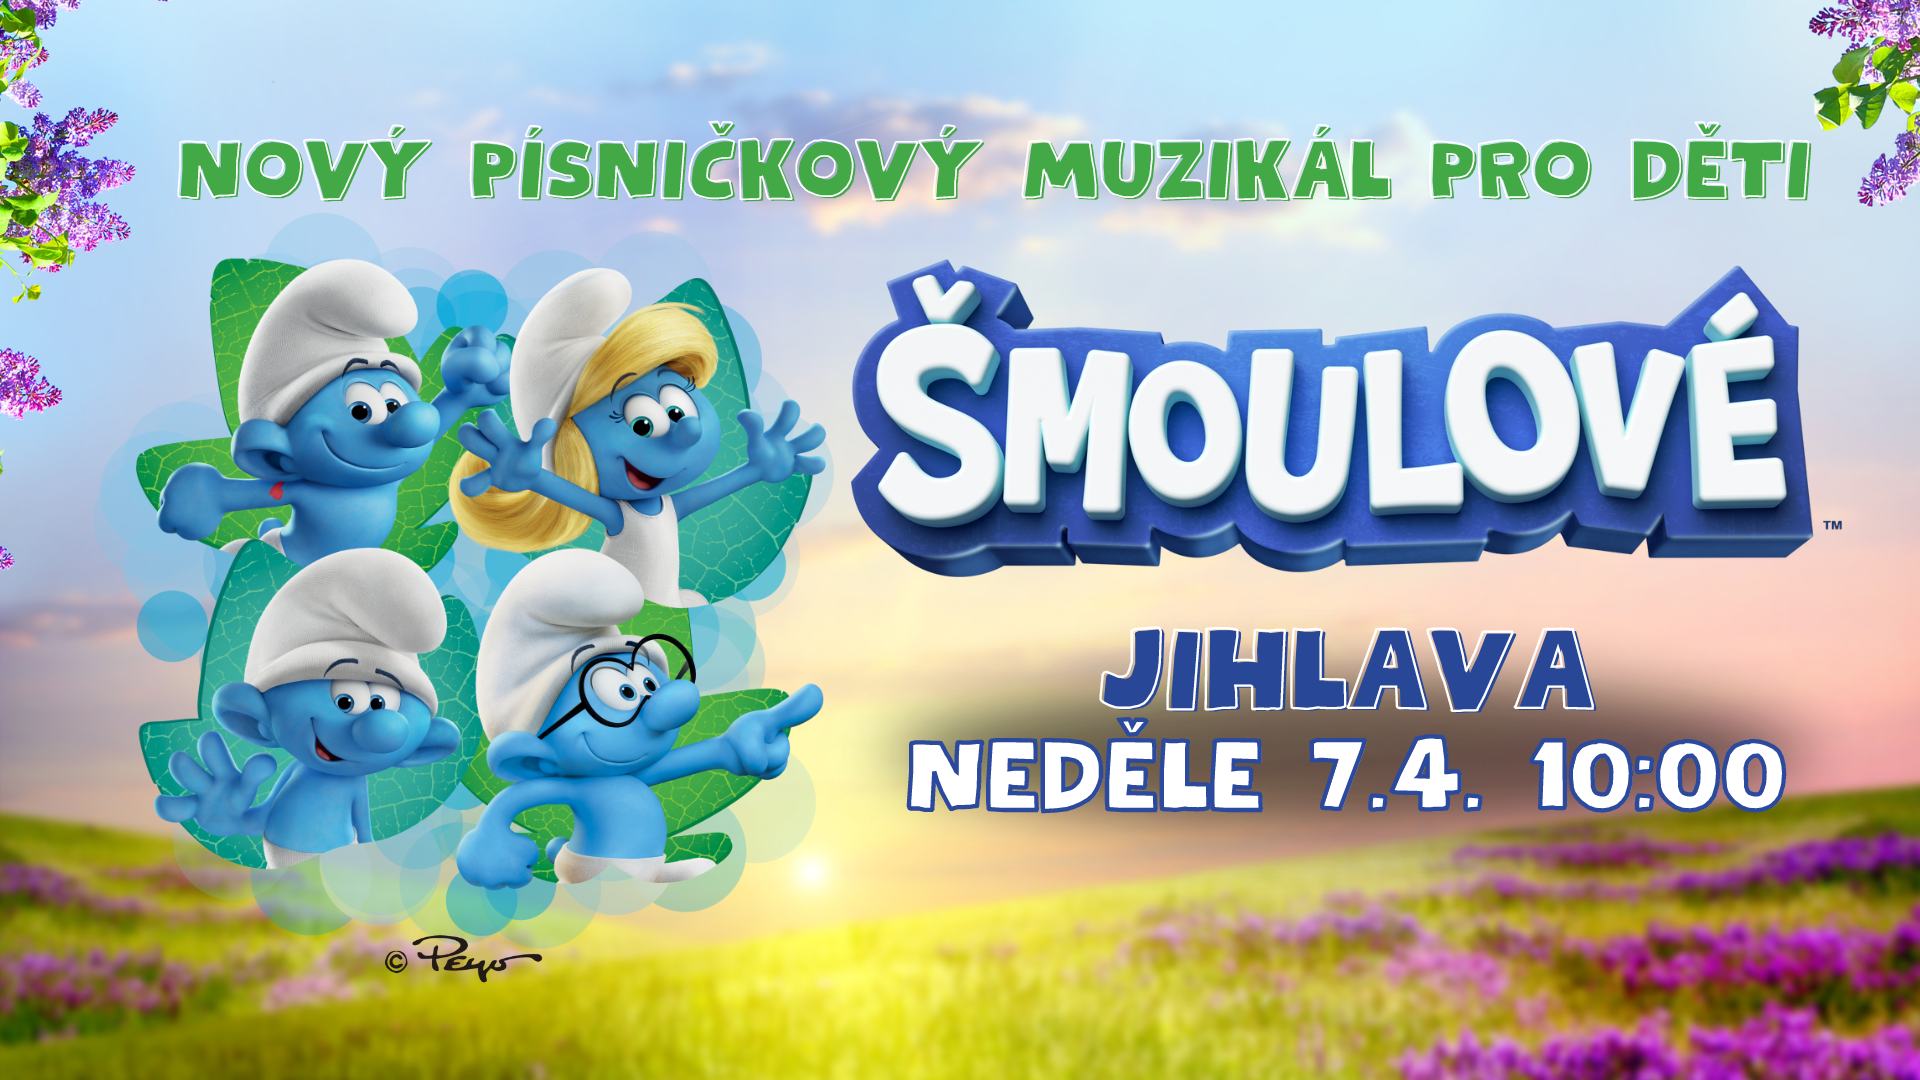 ŠMOULOVÉ - Nový písničkový muzikál pro děti